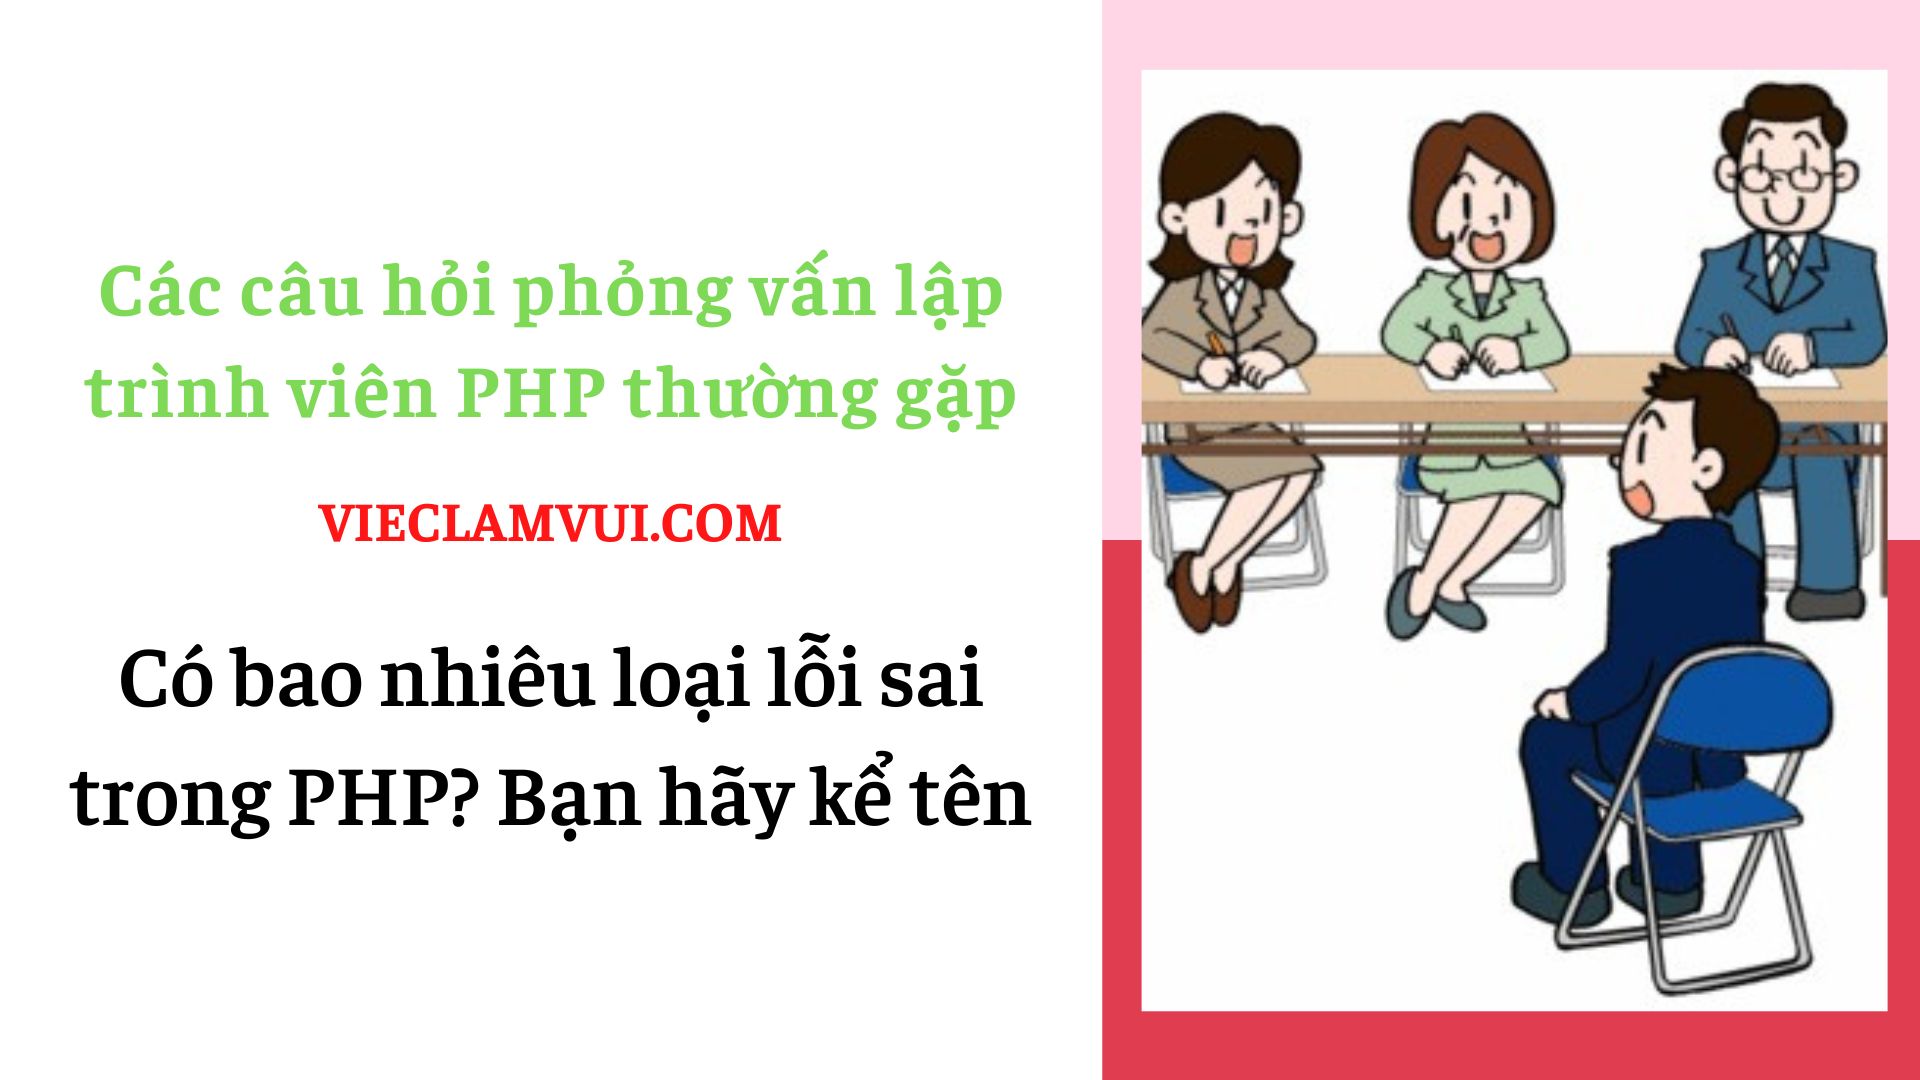 Các câu hỏi phỏng vấn lập trình viên PHP - ViecLamVui